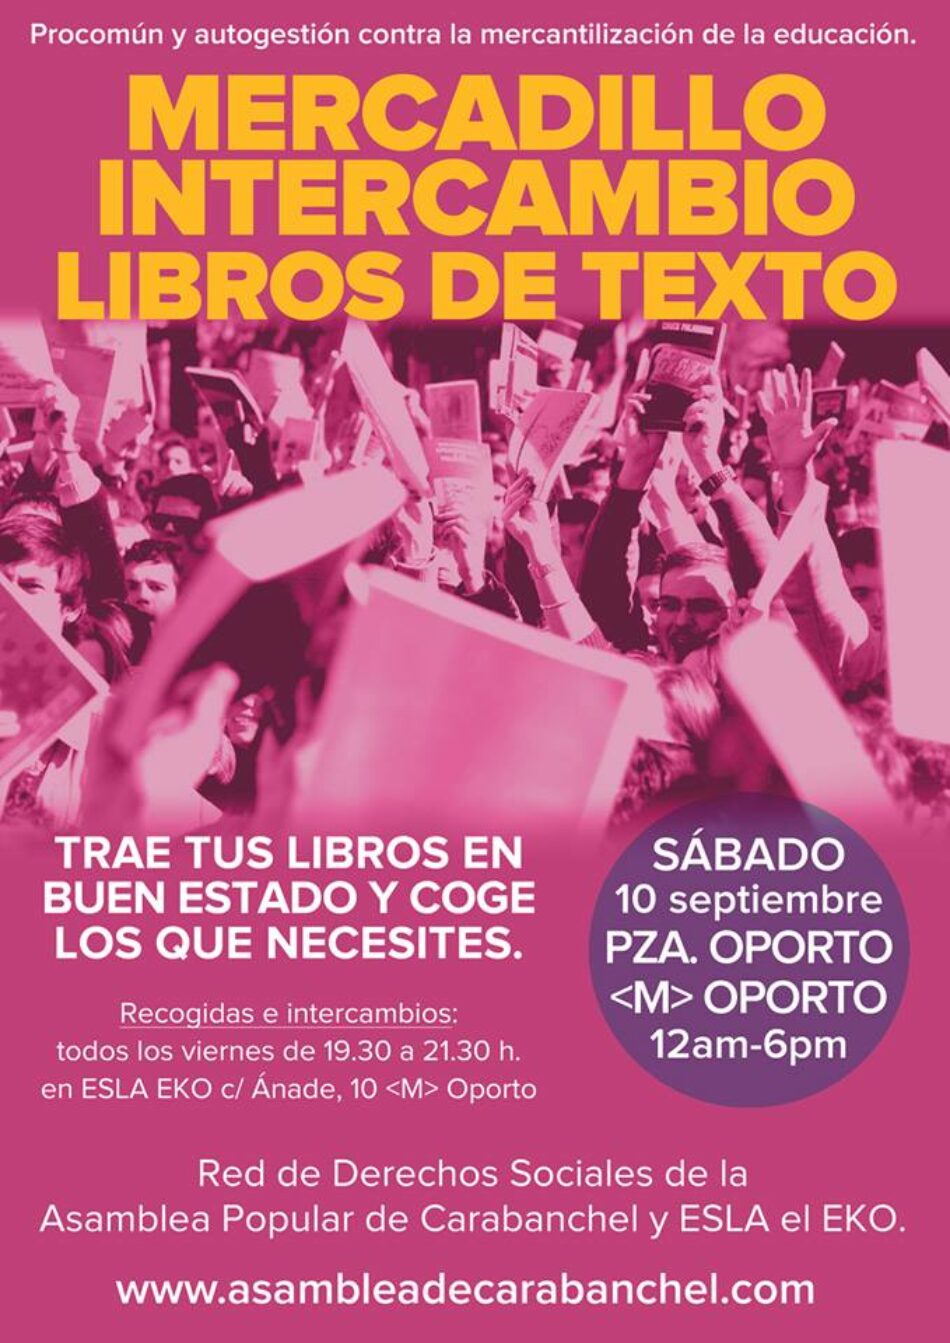 Asamblea Popular de Carabanchel organiza un mercadillo de libros de texto en la plaza de Oporto